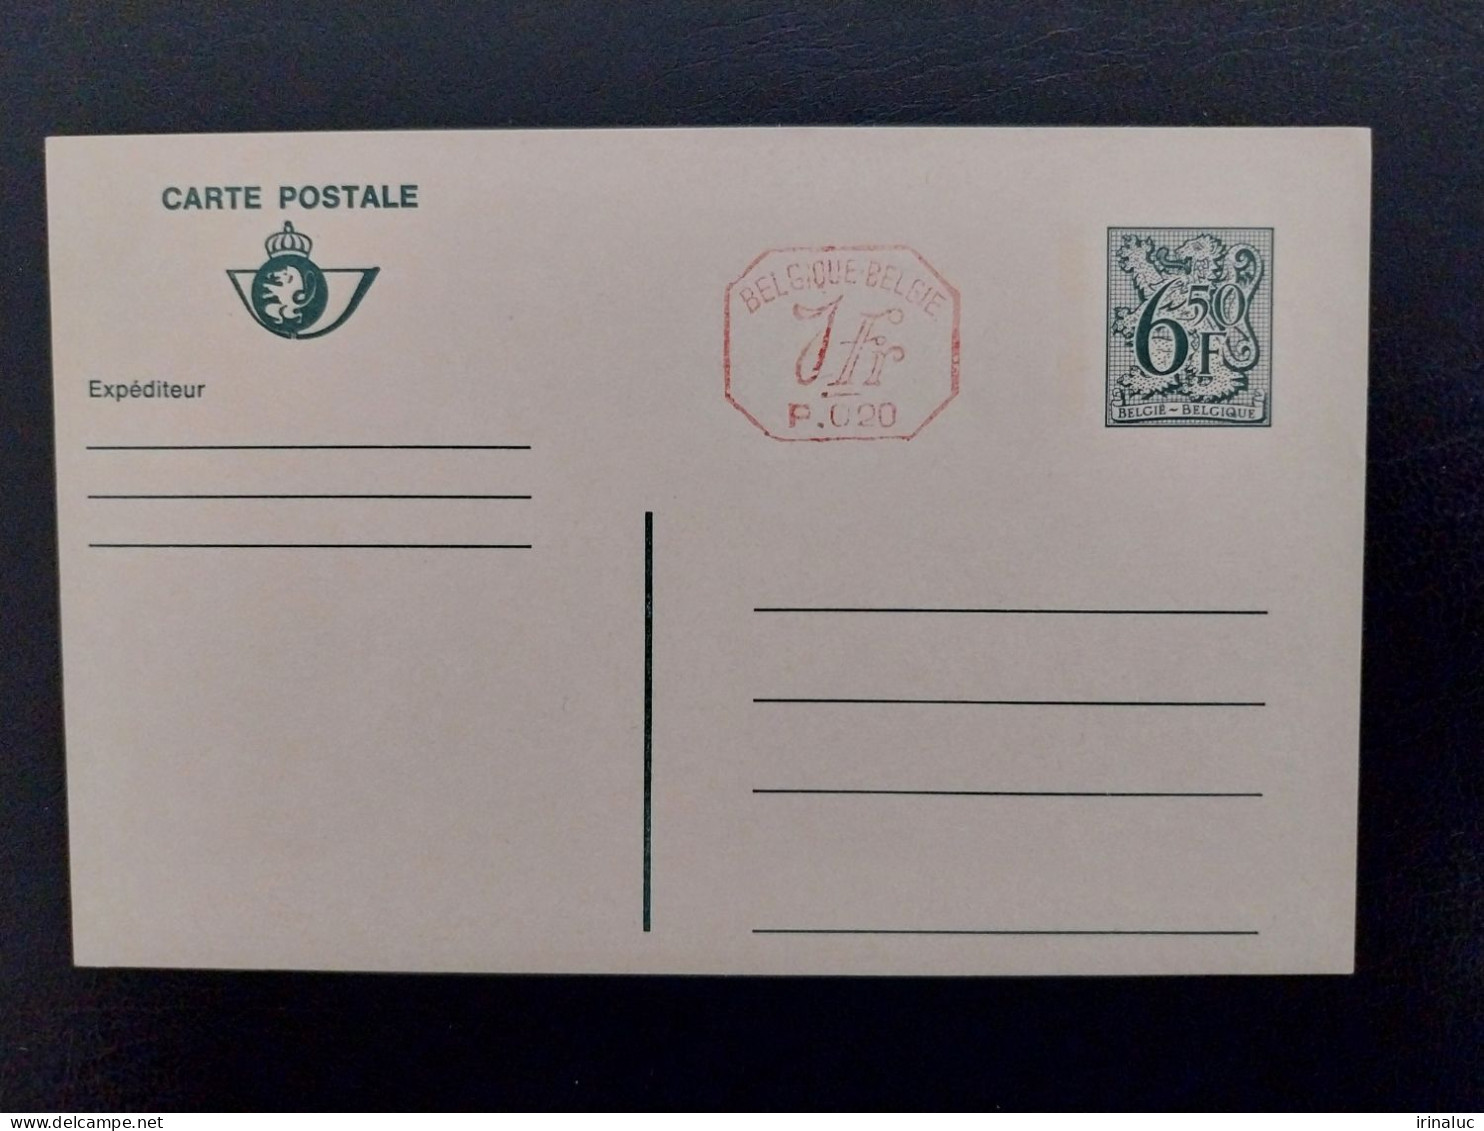 Briefkaart 190-III P020 - Cartes Postales 1951-..